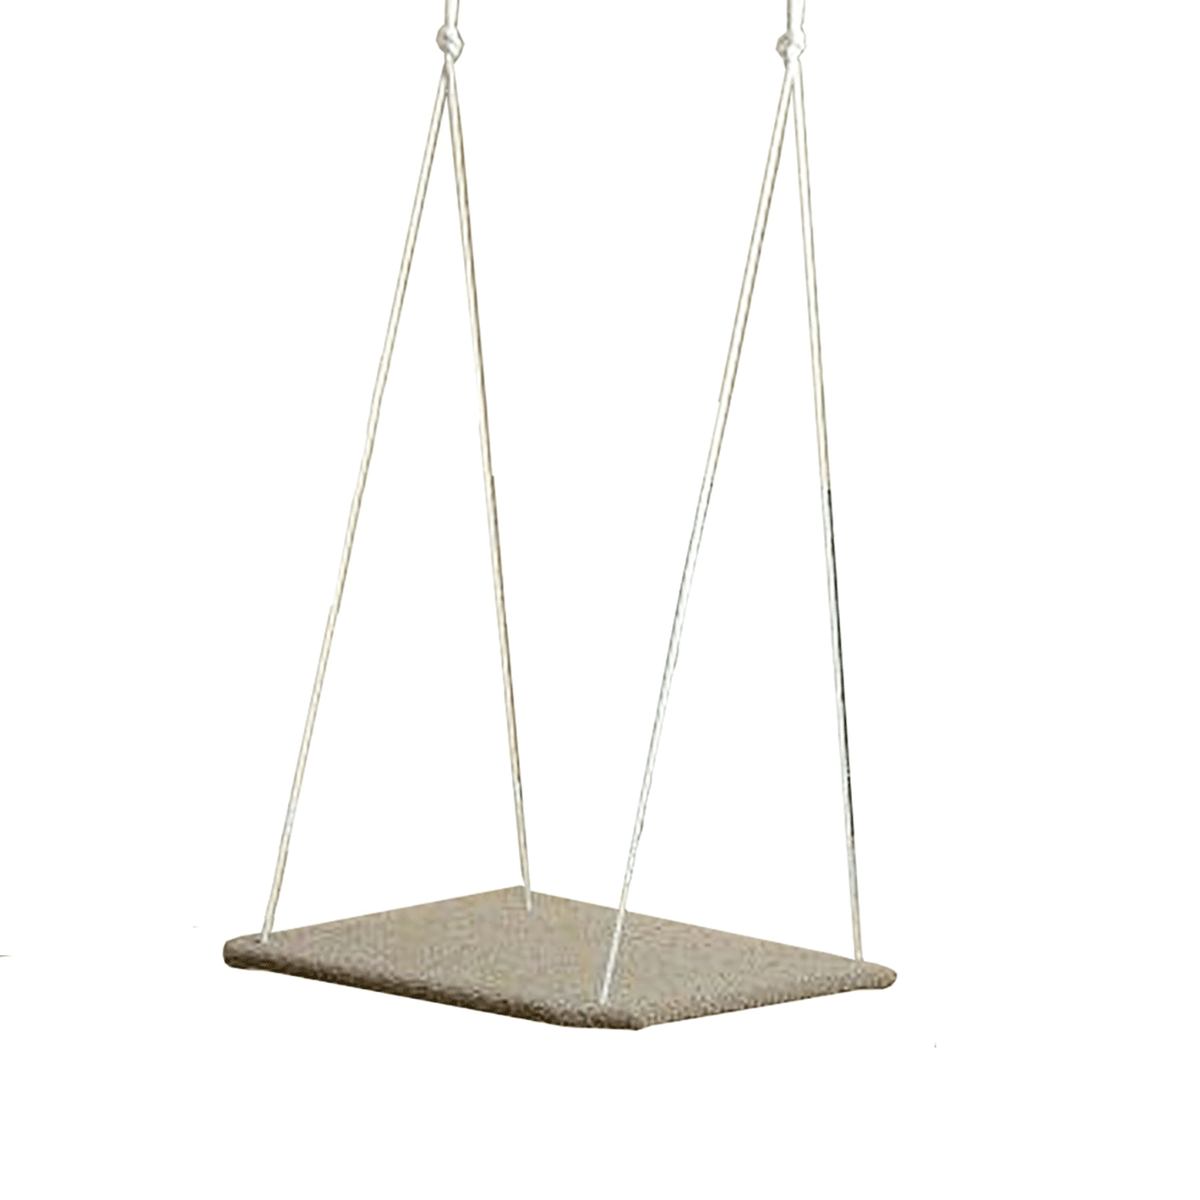 Carpeted Platform Swing